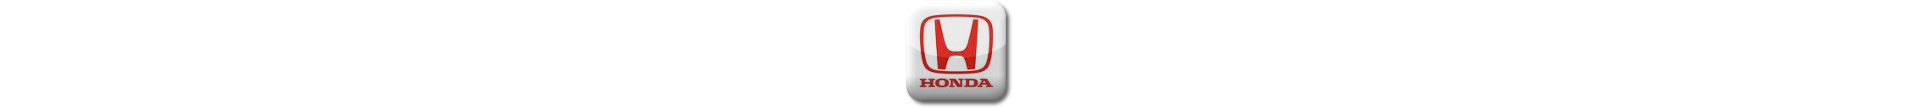 Boitier additionnel Honda Diesel Evolussem